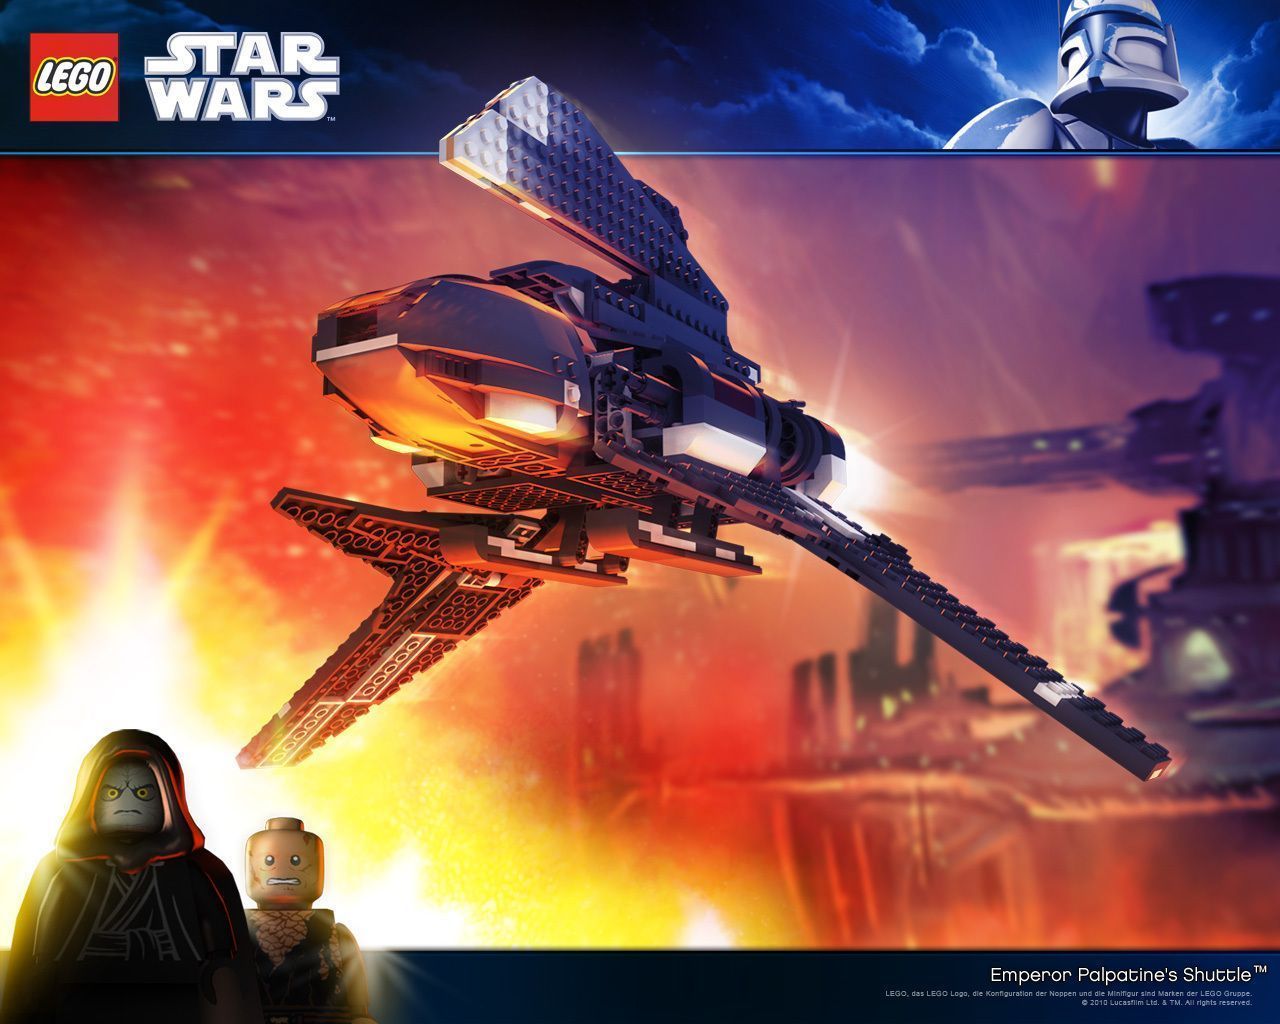 Lego Star Wars - Lego Star Wars Wallpaper 23157036 - Fanpop